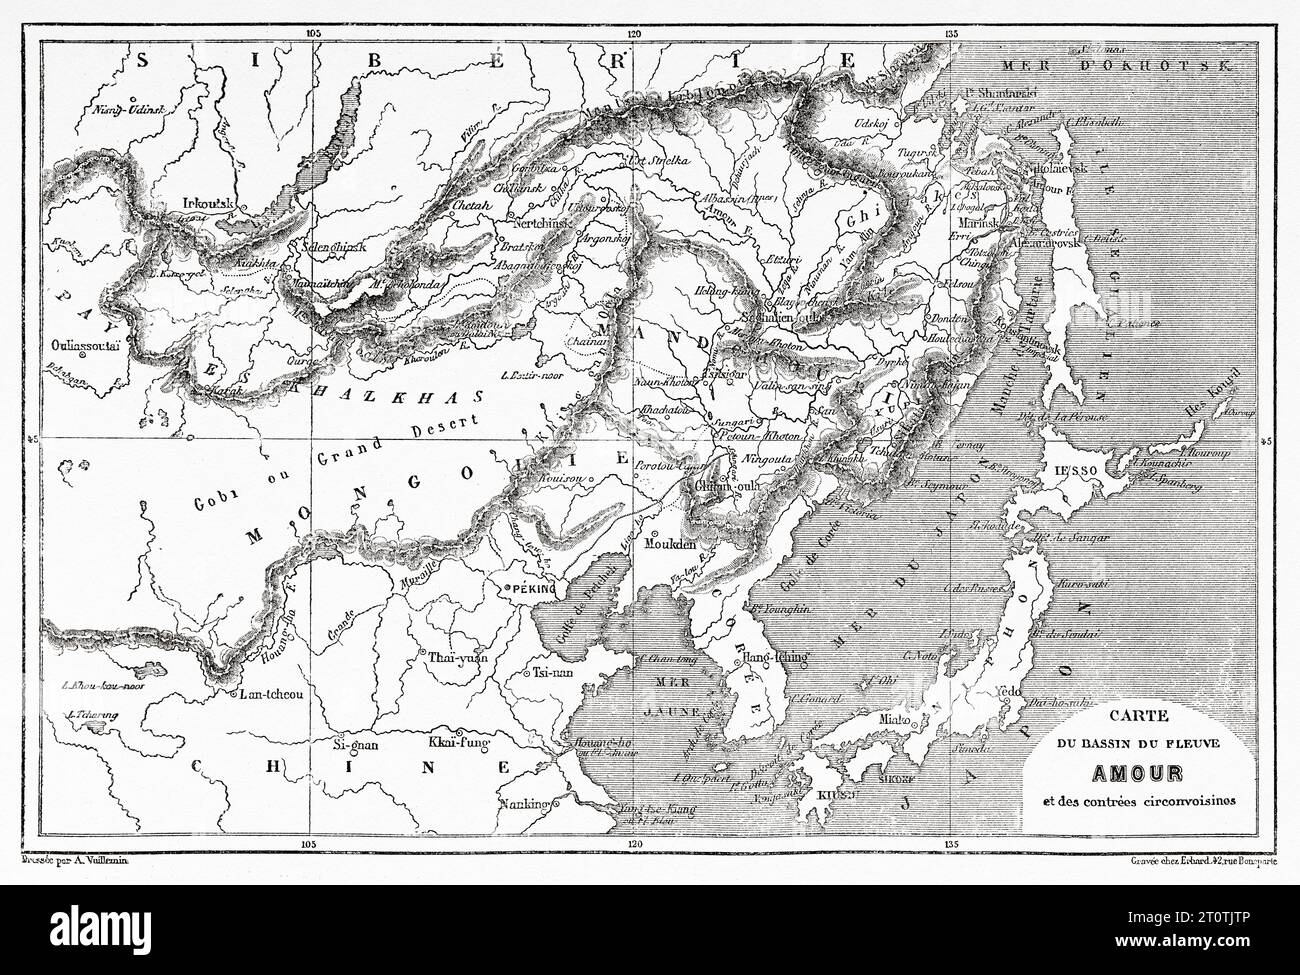 Amur Flussbecken alte Karte, Nordostchina. Alter Stich aus dem 19. Jahrhundert aus Le Tour du Monde 1860 Stockfoto